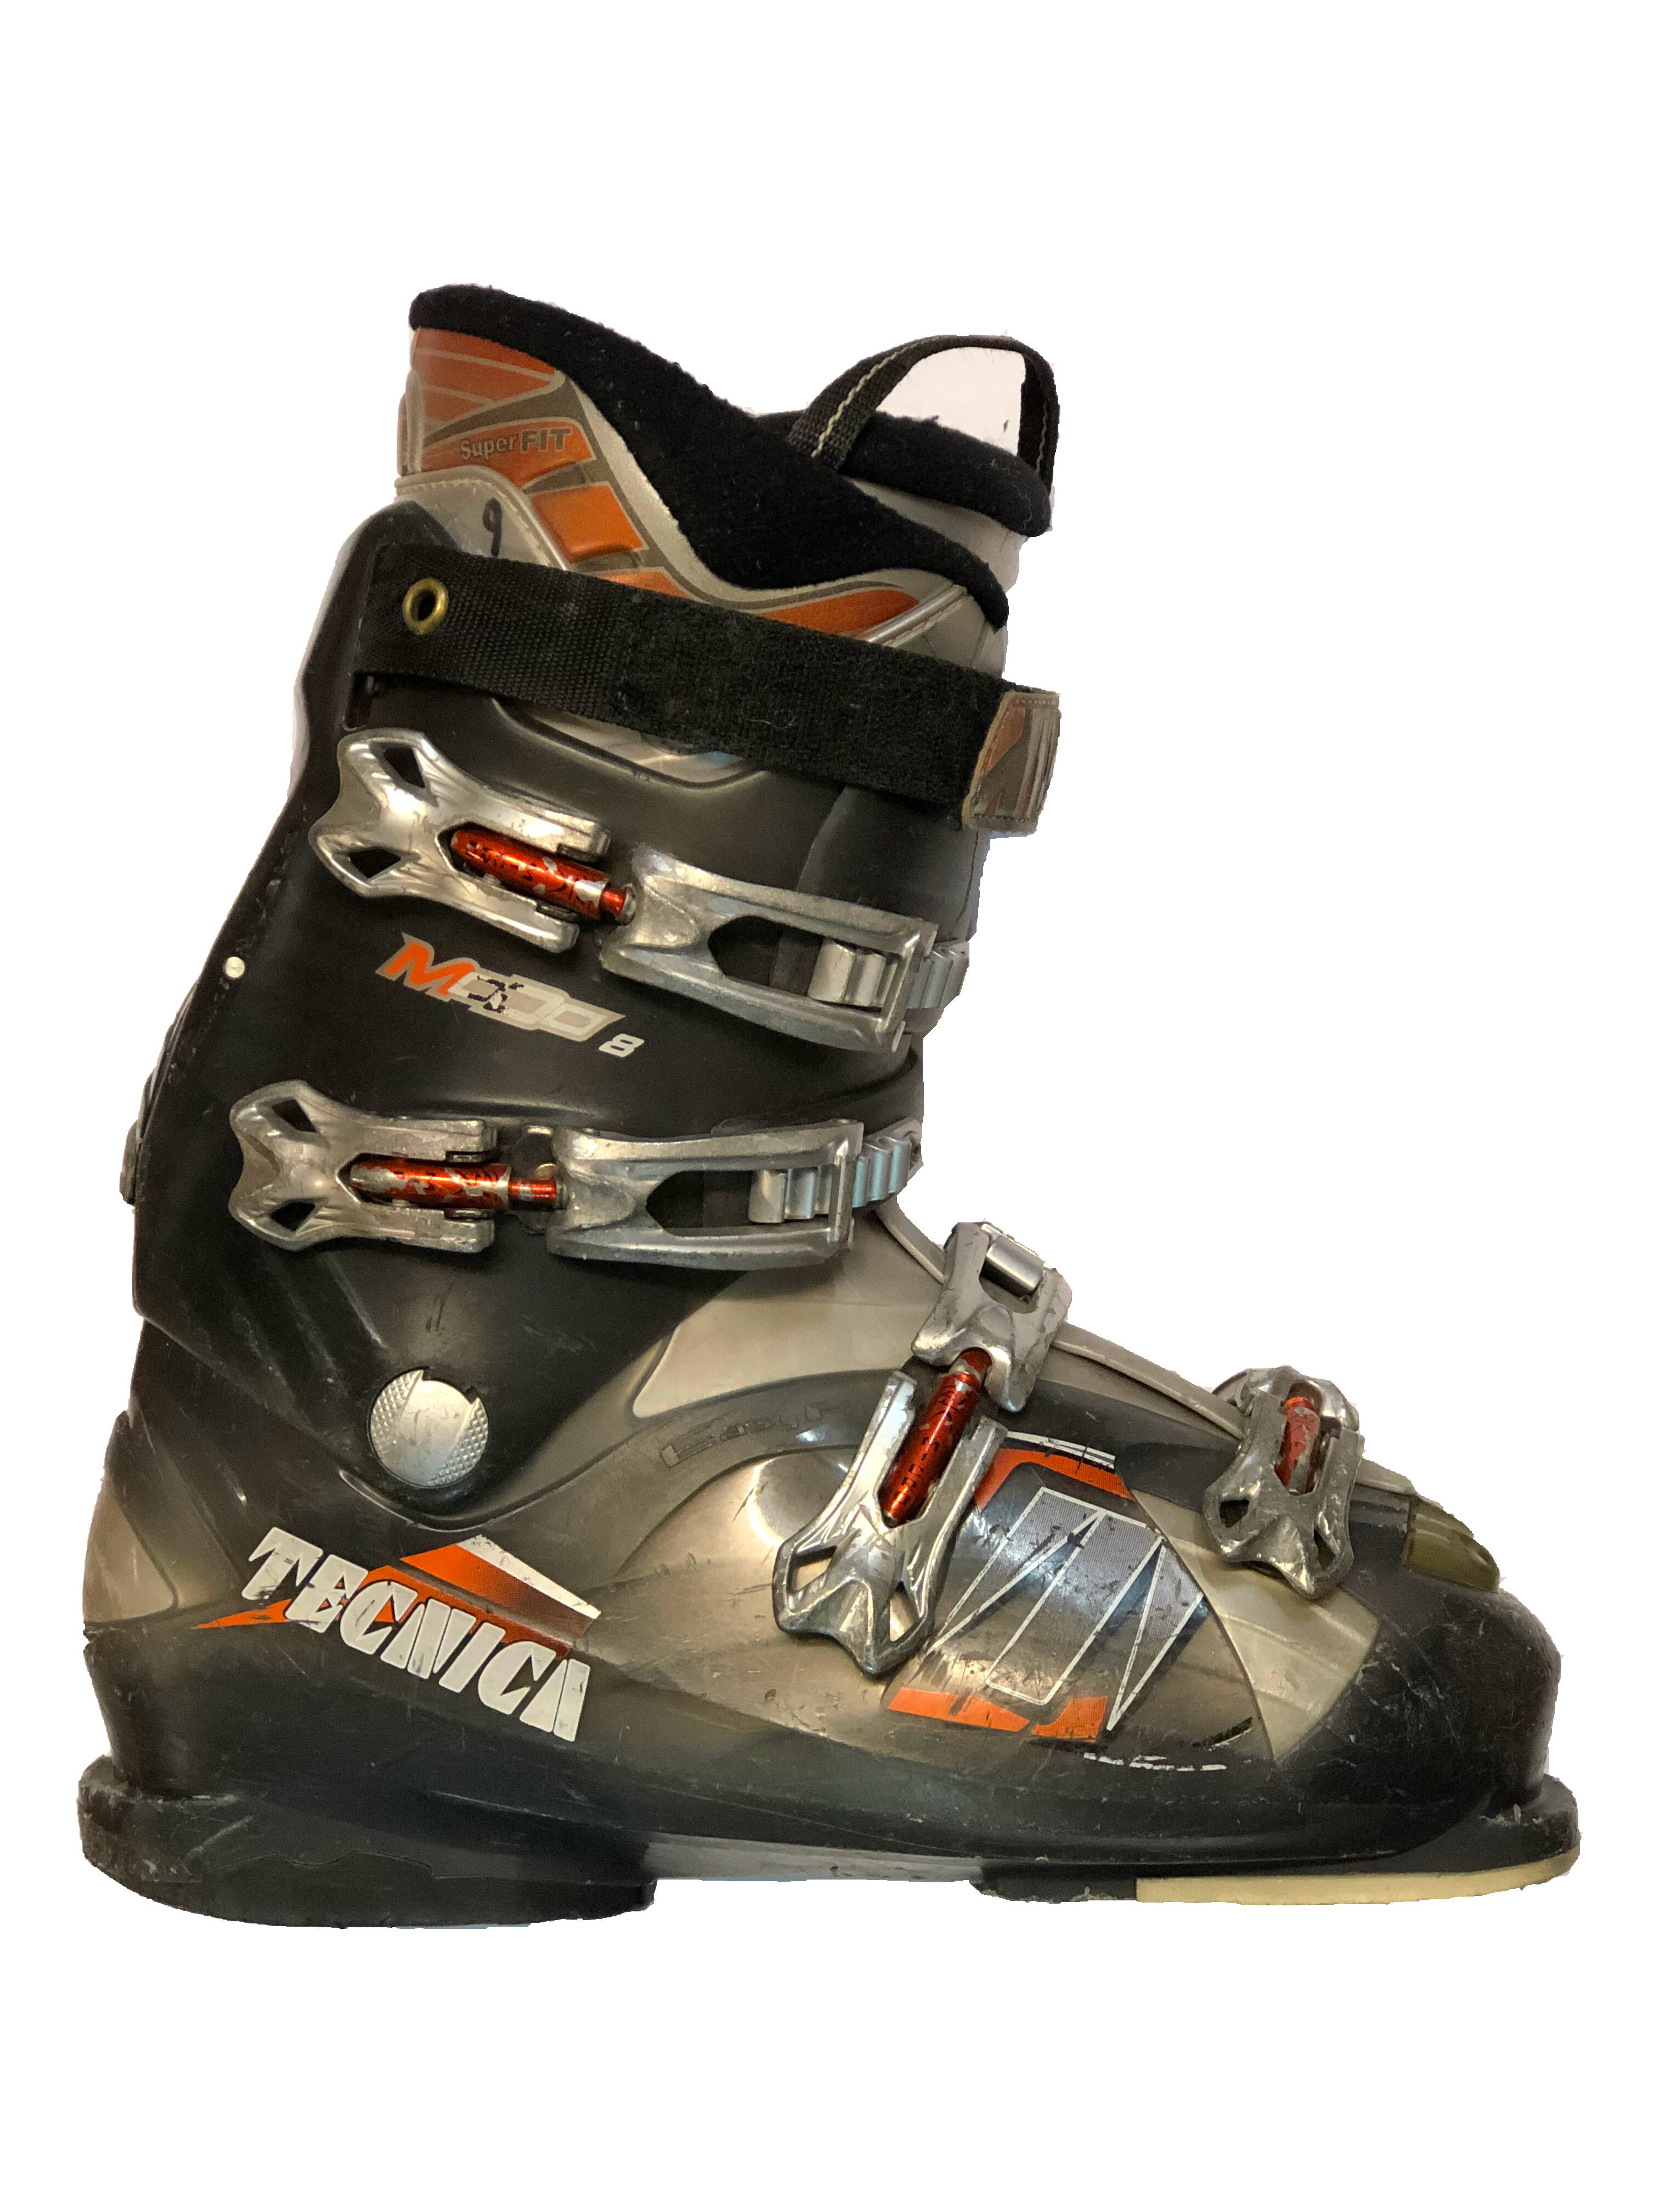 Używane buty narciarskie Tecnica 28 / 325 rozmiar 43 :: Sklep Sportowy -  outlet sportowy, koncówki kolekcji, wyprzedaże, narty, deski, wiązania,  sprzet narciarski, buty sportowe